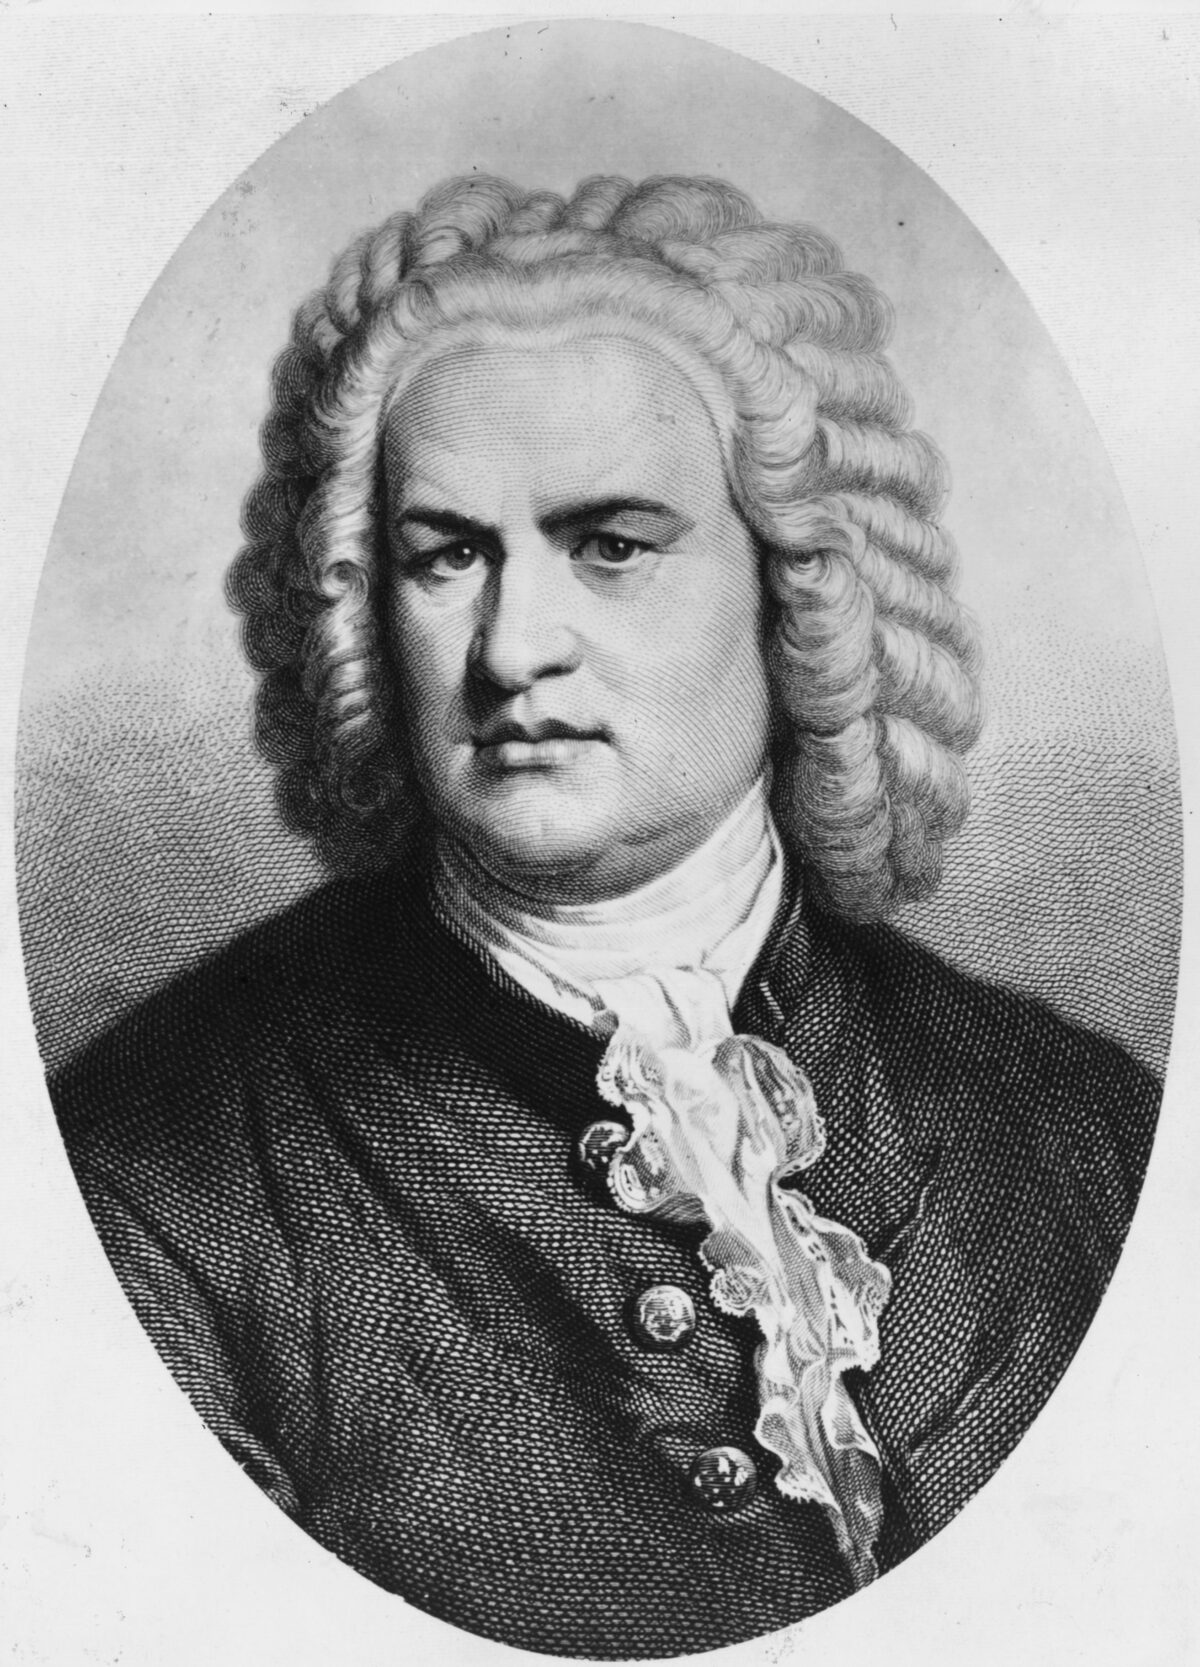 Bach: Dấu ấn của một thiên tài